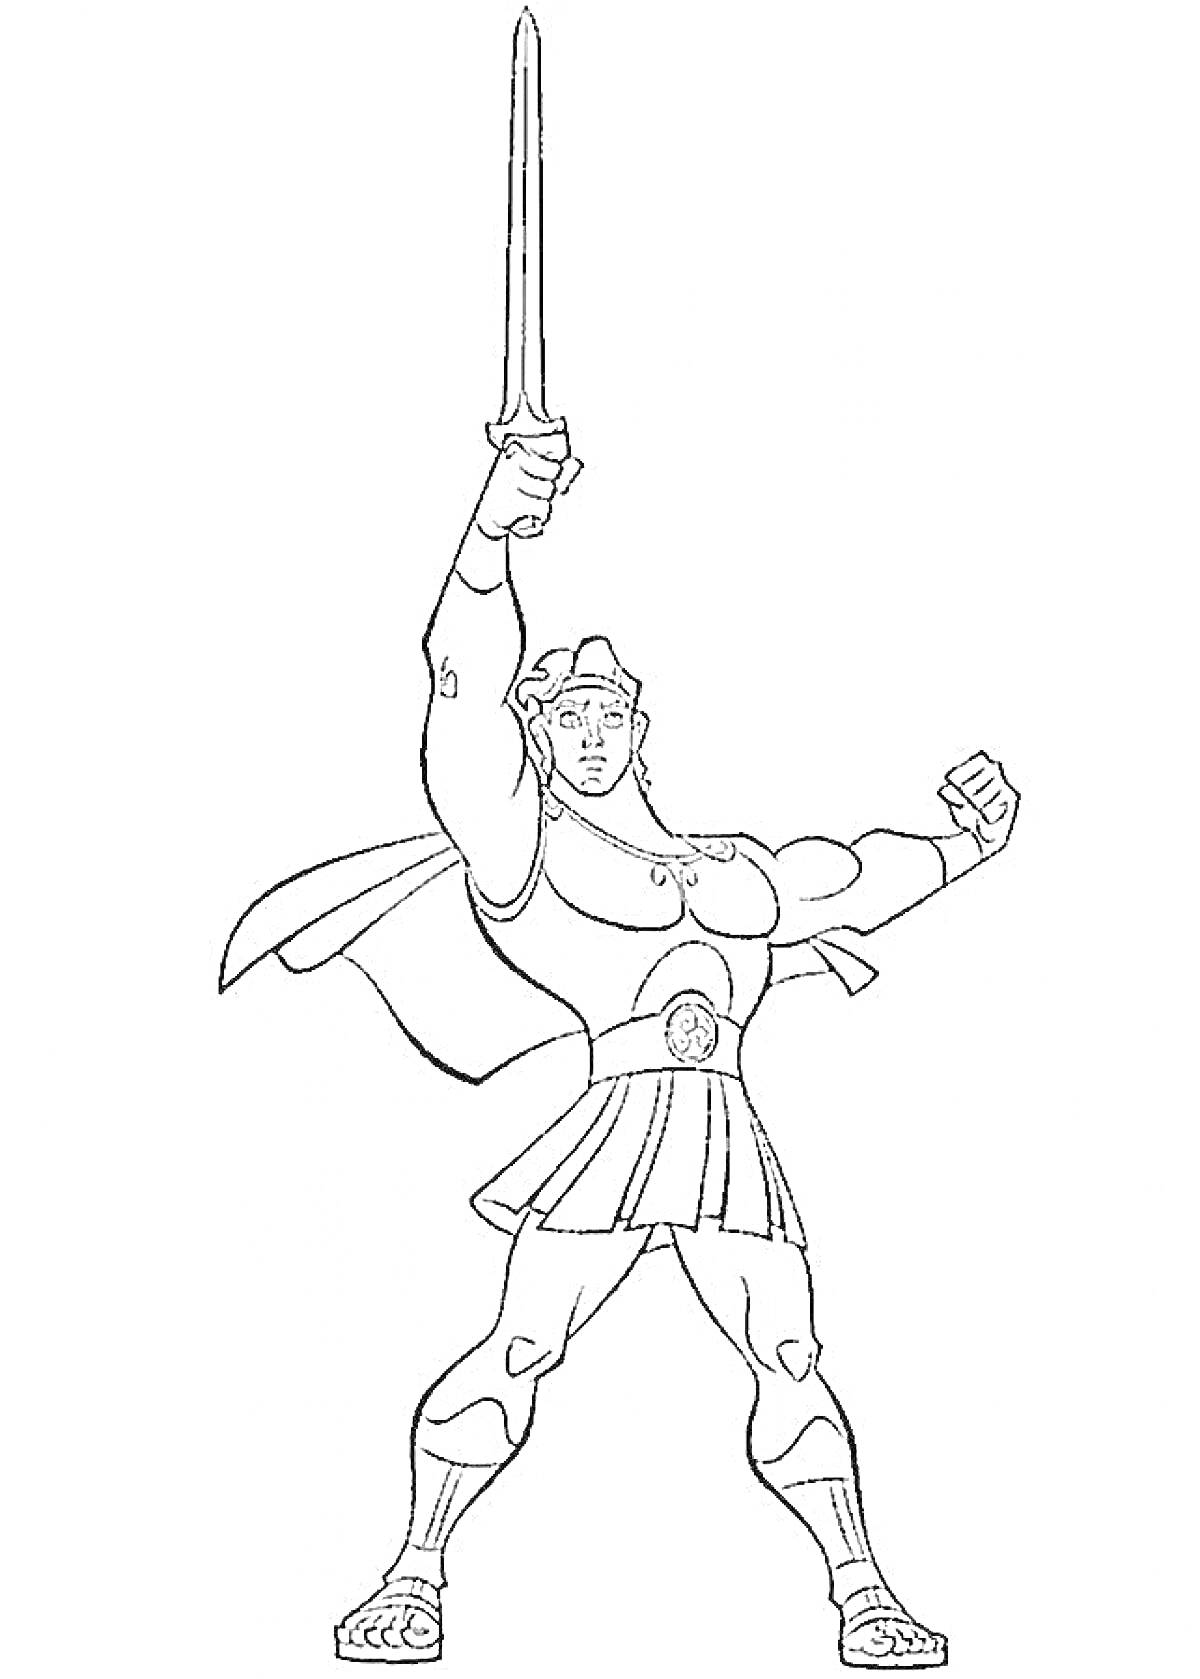 Геракл с поднятым мечом и плащом